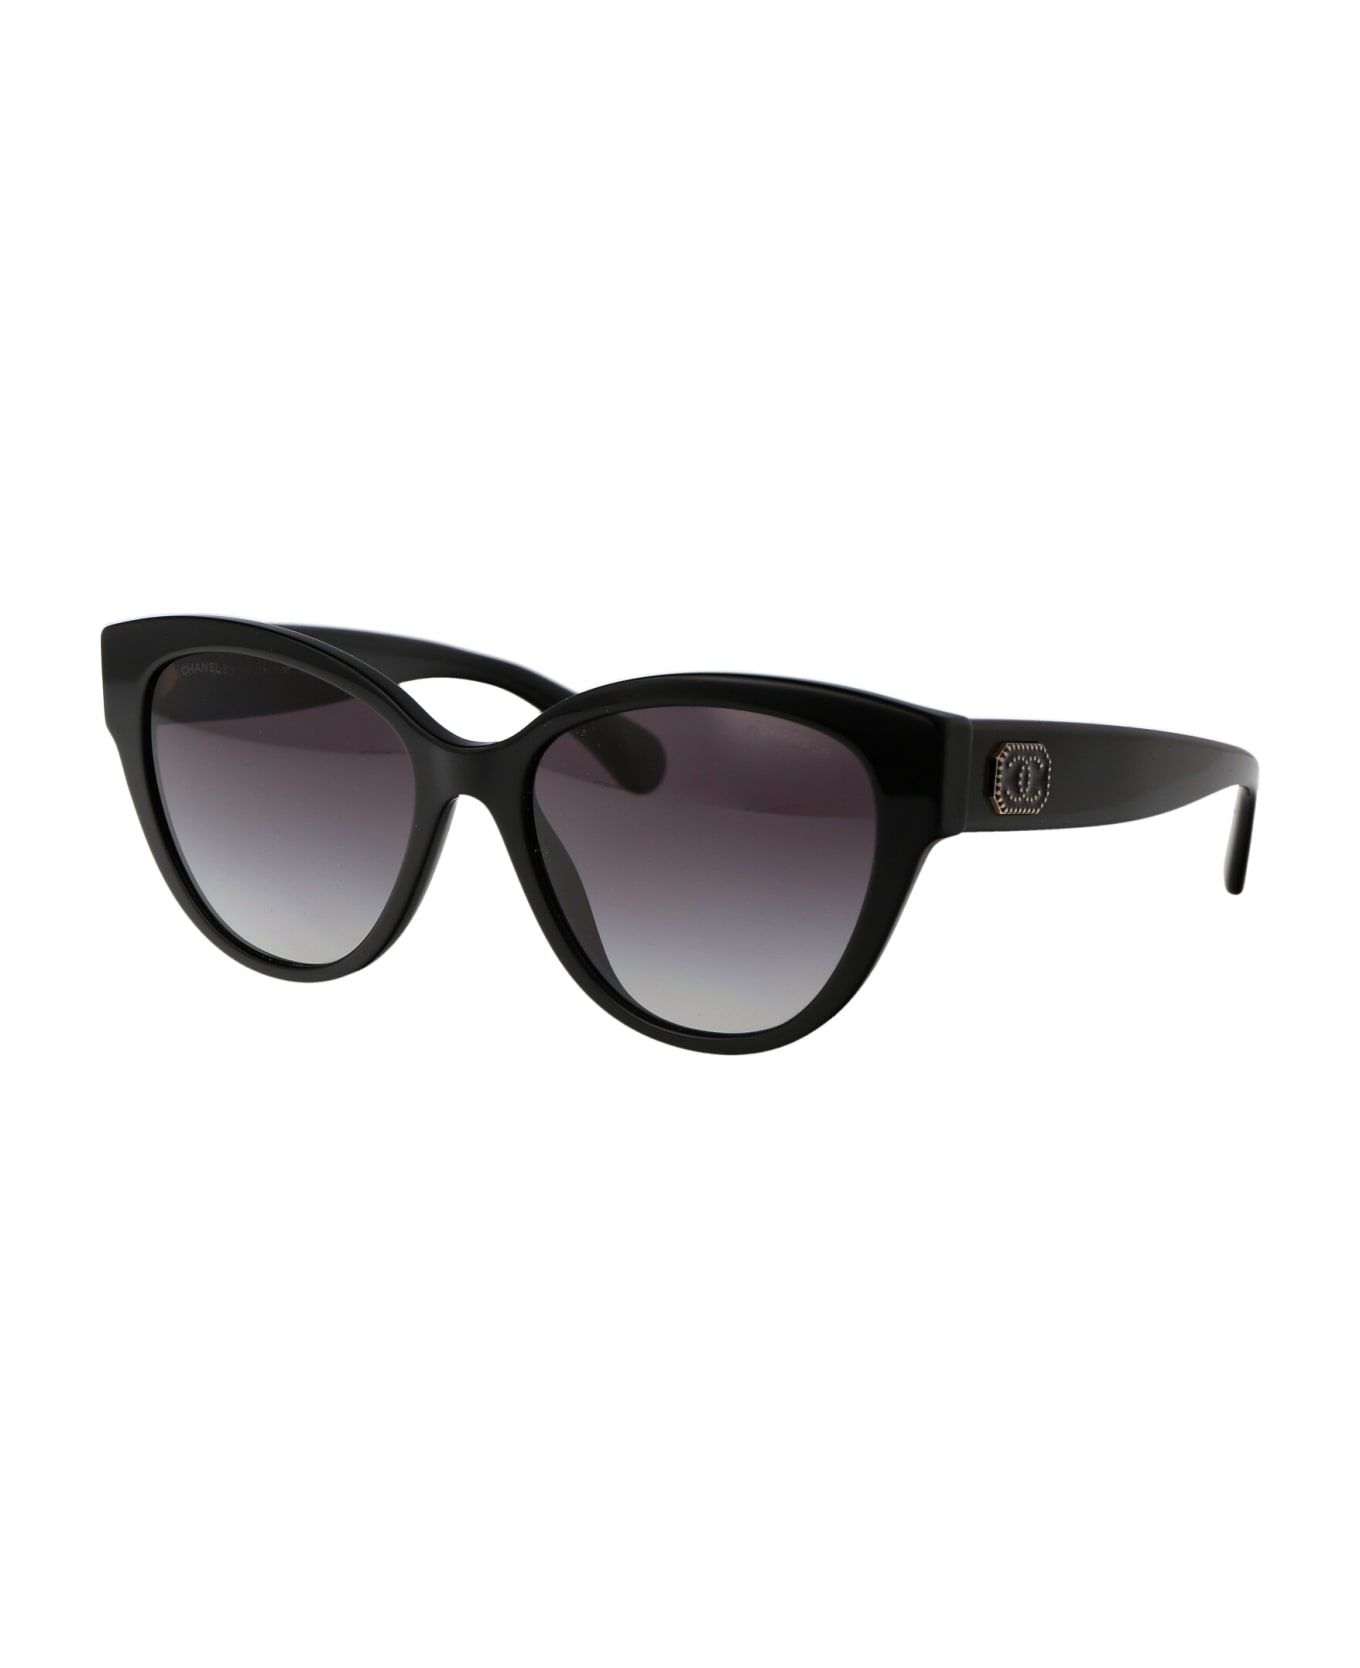 Chanel 0ch5477 Sunglasses - 1403S6 BLACK